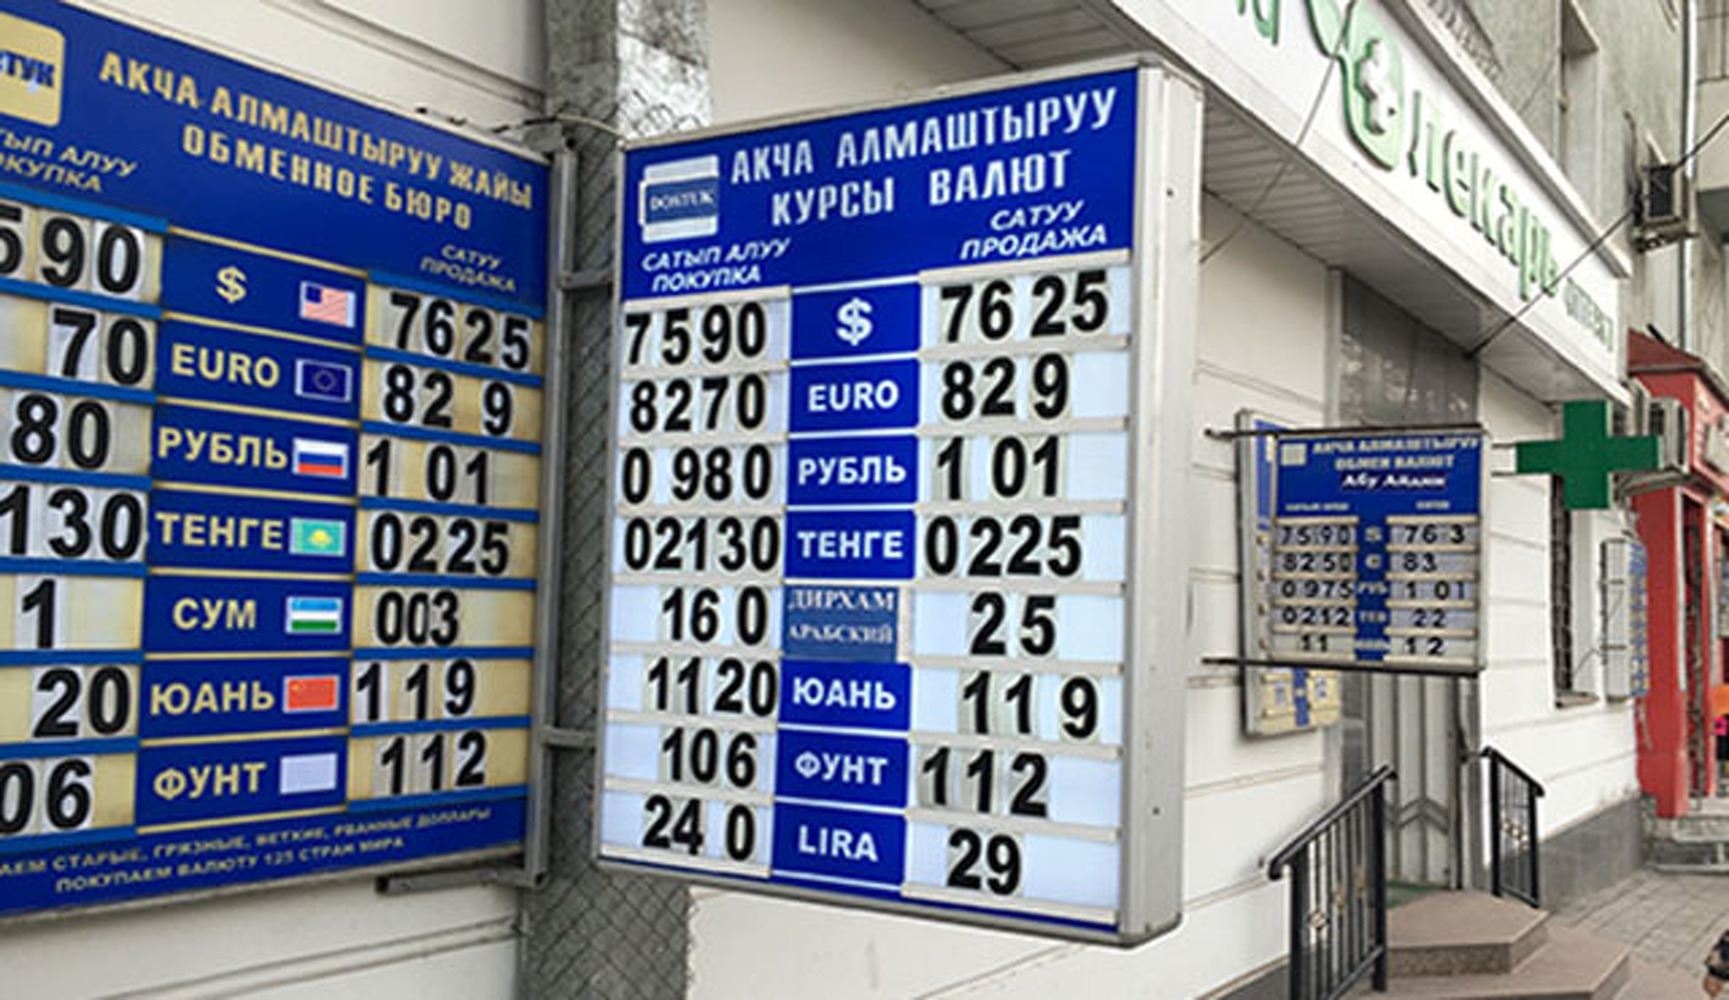 Курс рубля к сому киргизскому на сегодня. Курс рубля. Курс валют. Обменный пунк Киргизии. Курс обмена валют в Бишкеке.